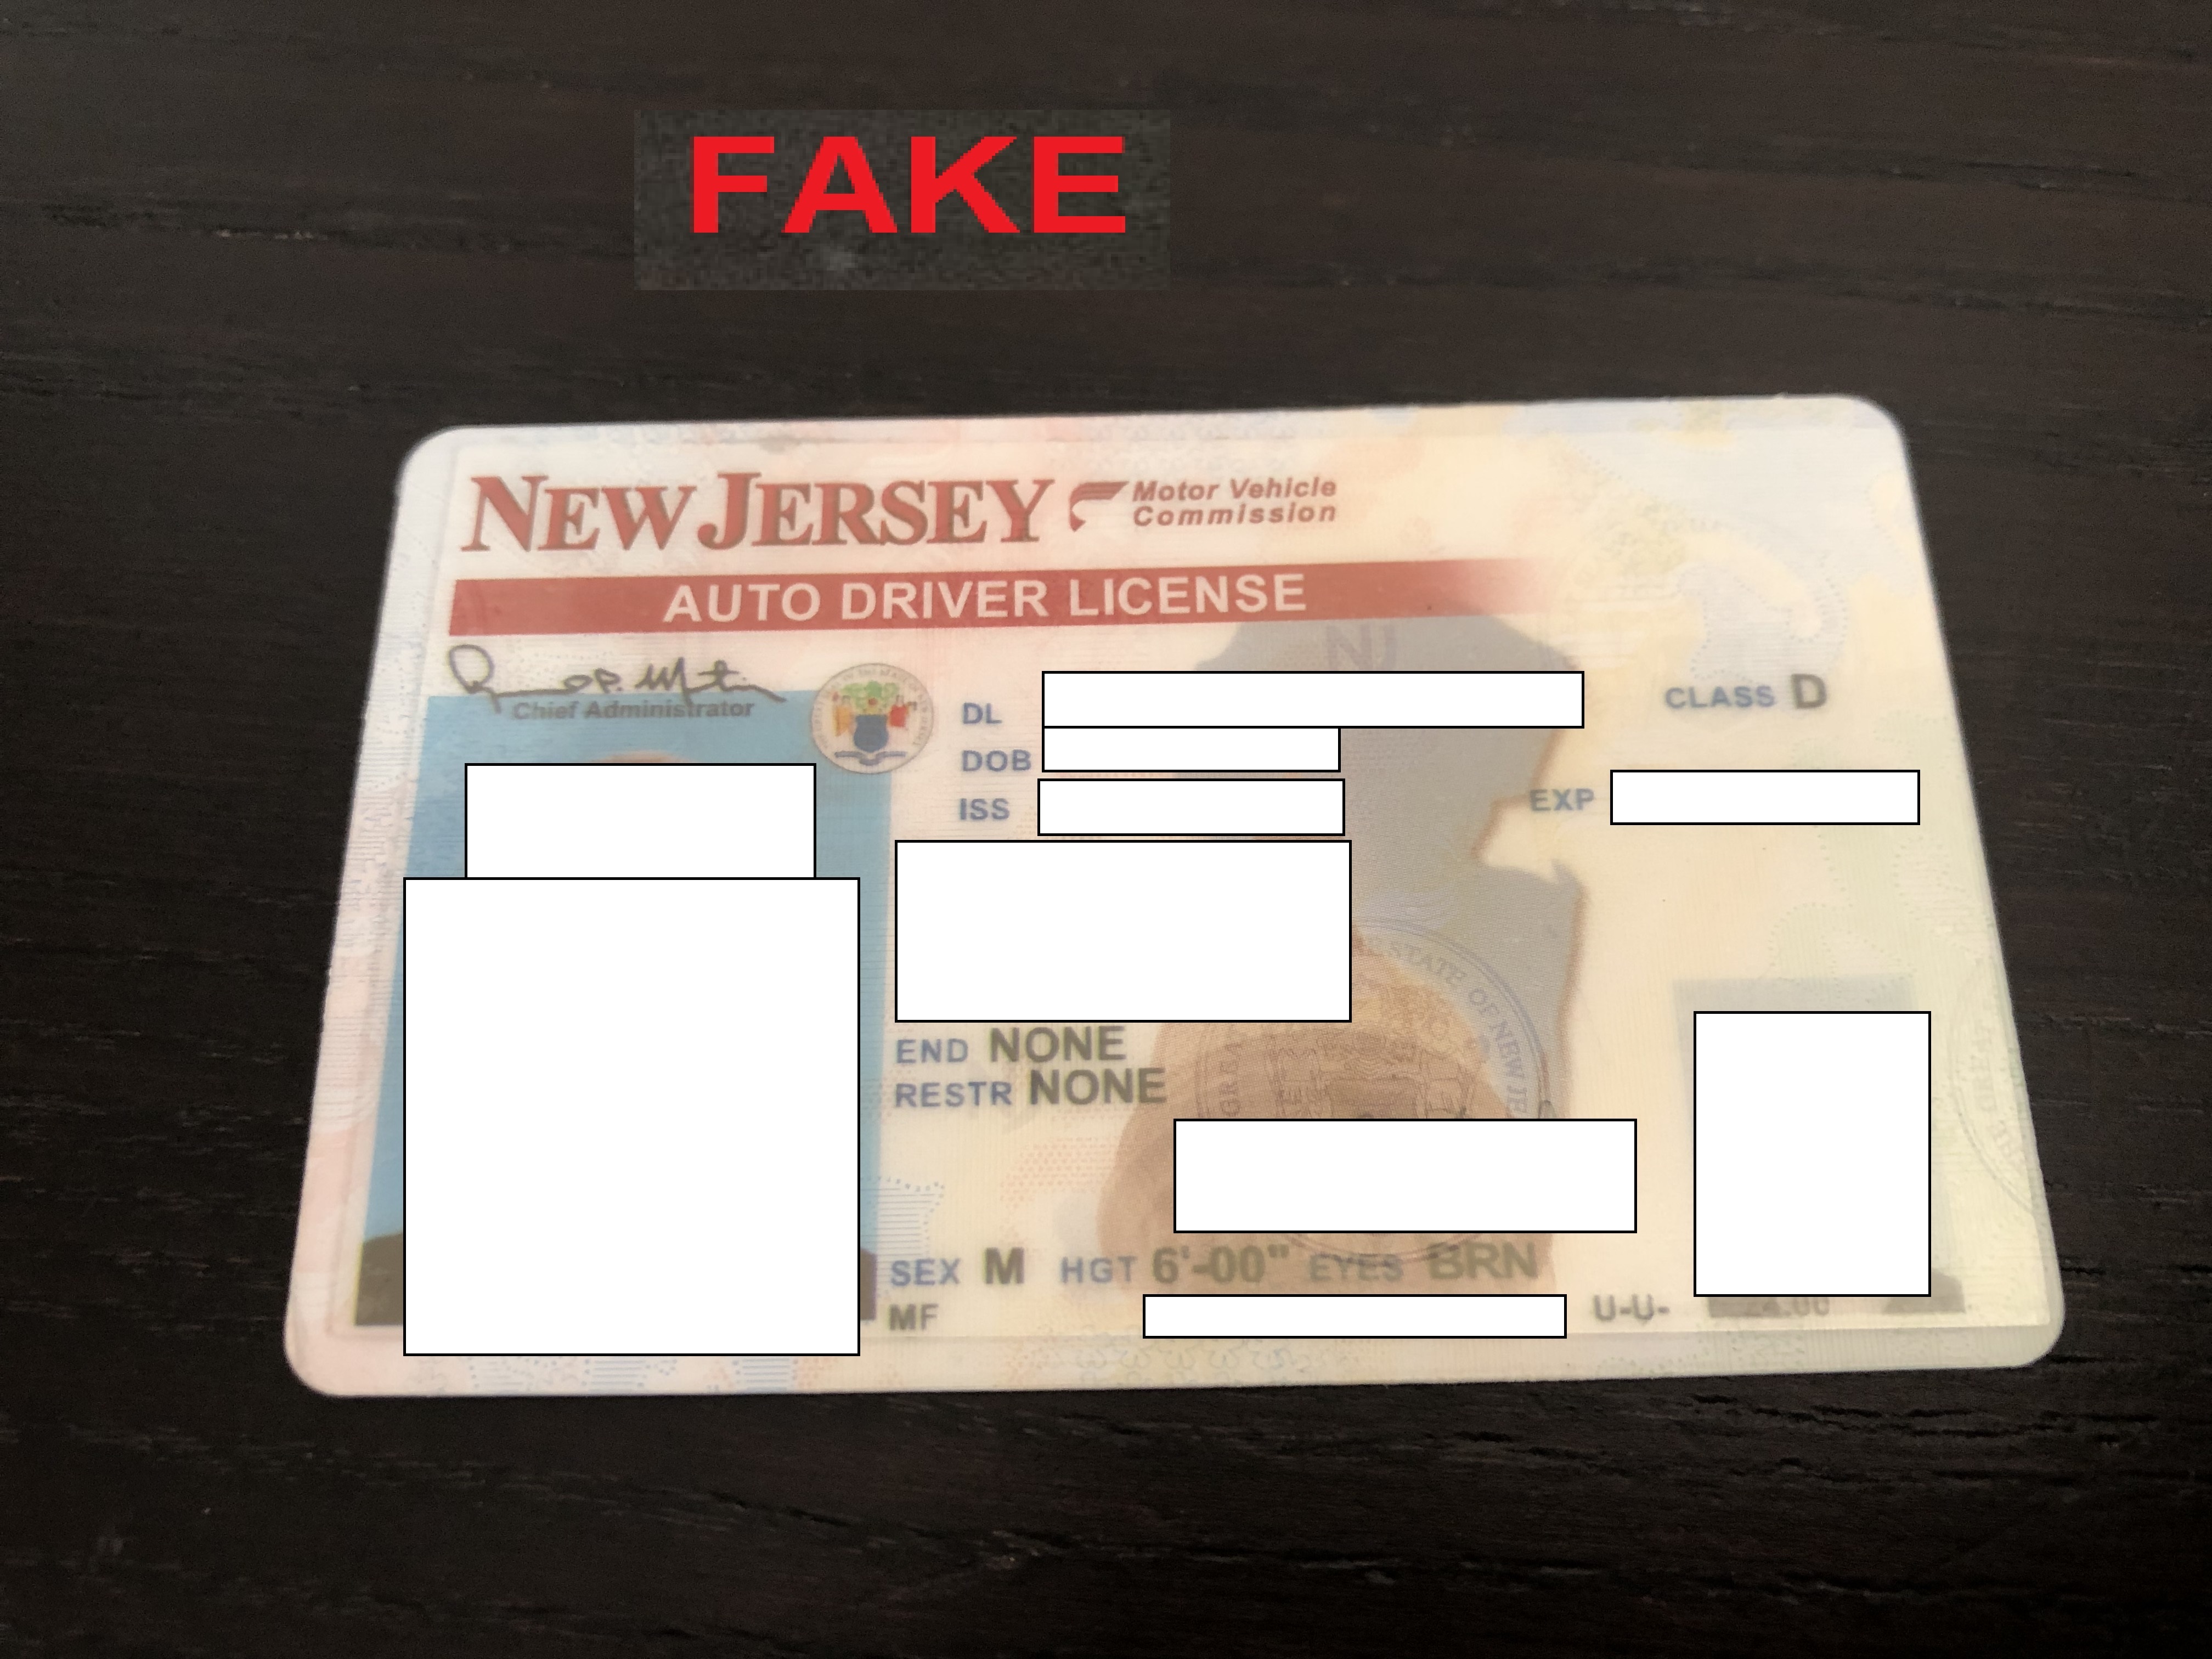 FakeIDVendors - Fake ID & Vendor Discussion